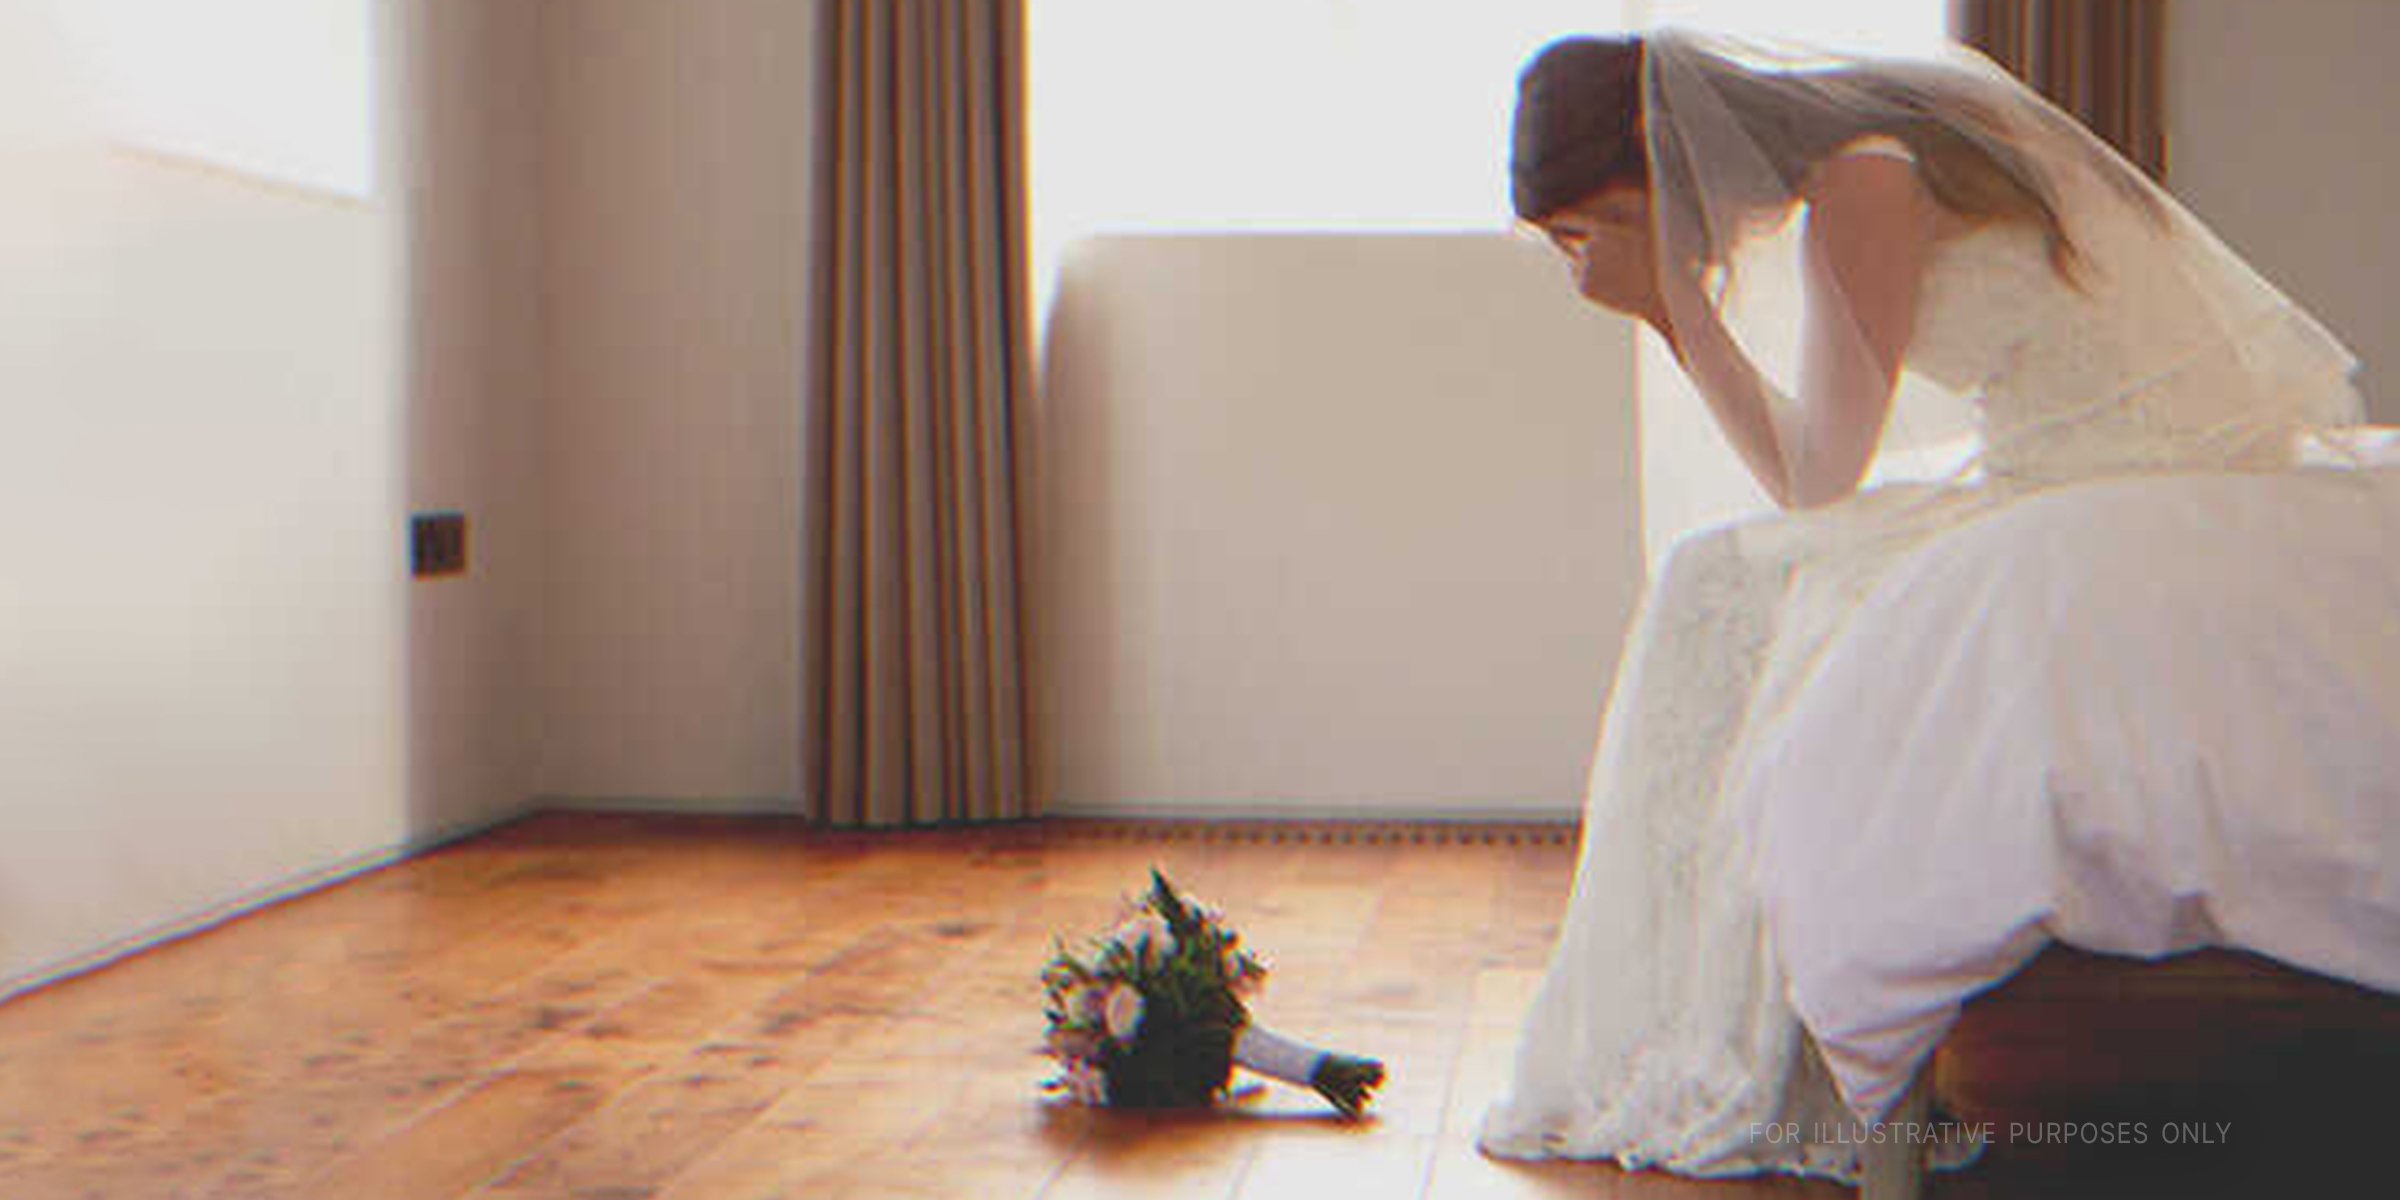 Une mariée qui pleure dans sa chambre | Source : Shutterstock 